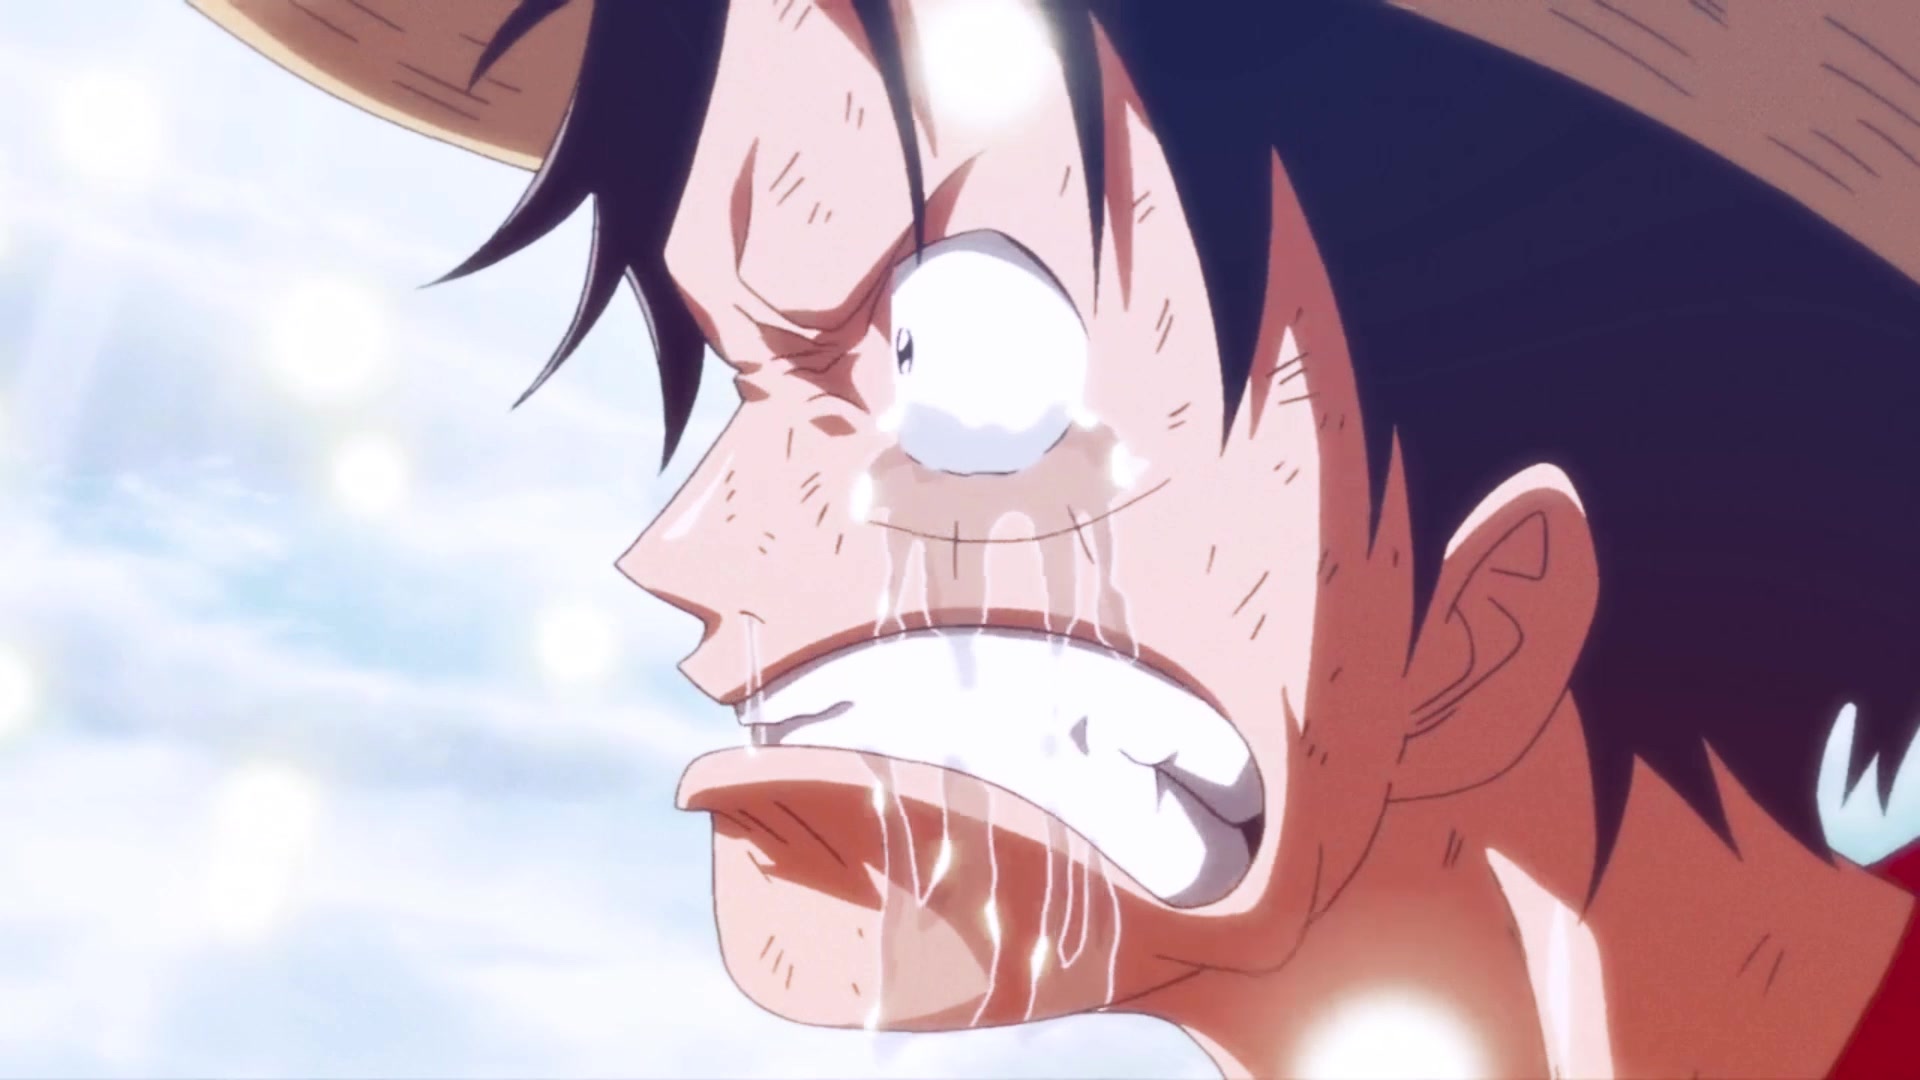 Tội lỗi, hi sinh và tình bạn. Những cảm xúc đầy sâu sắc của One Piece được tái hiện một cách cảm động qua hình ảnh. Hãy xem để trải nghiệm những khoảnh khắc đáng nhớ này.